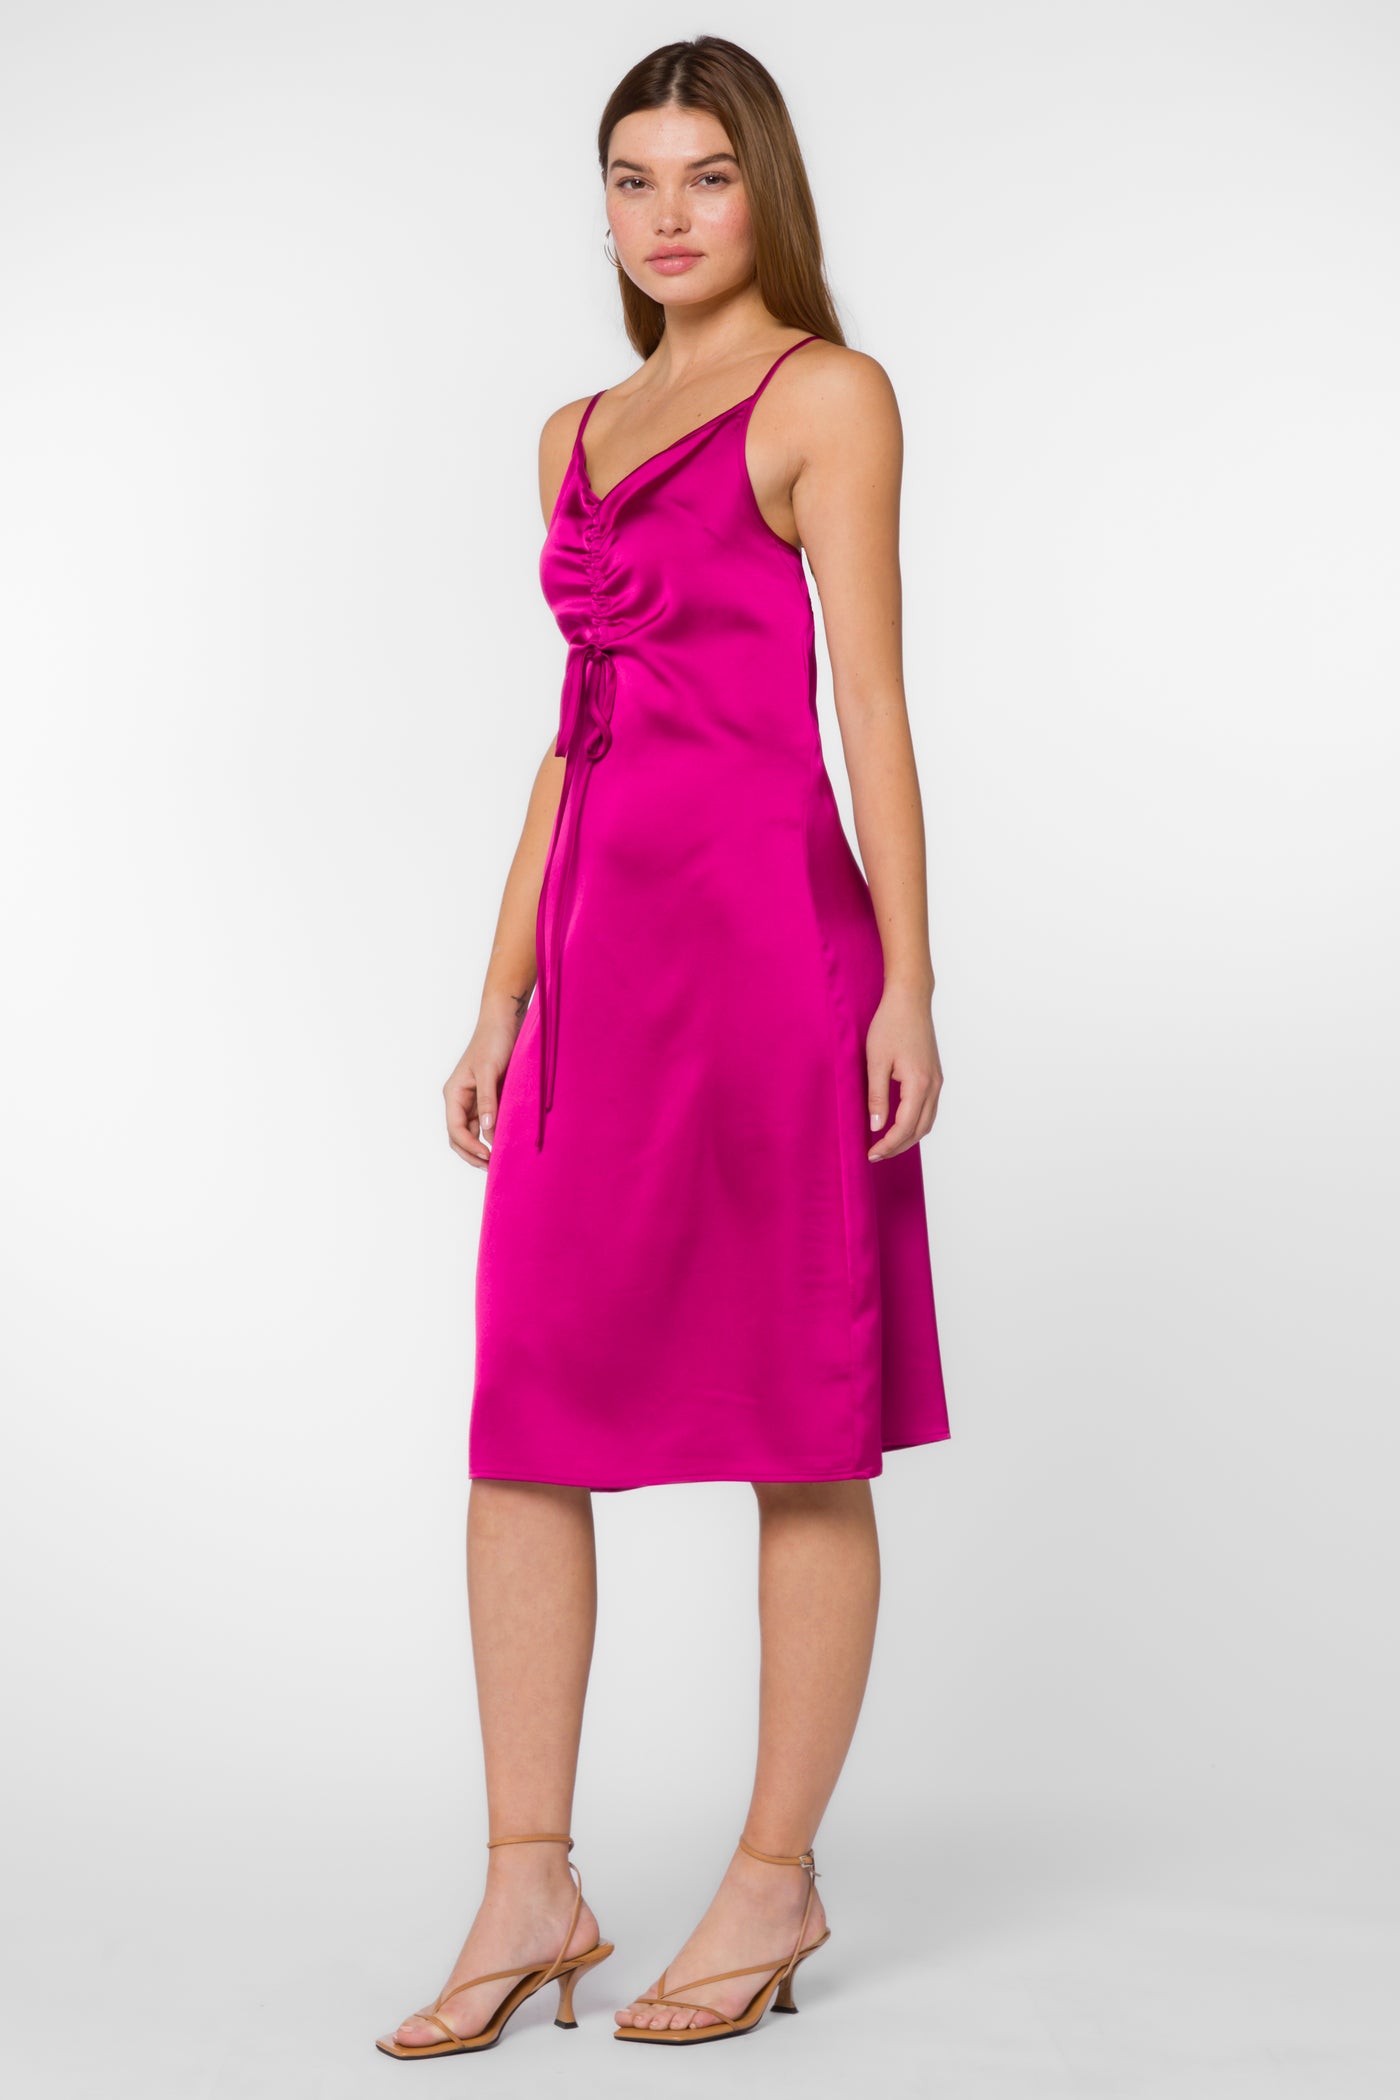 Livvy Fuchsia Slip Dress - Dresses - Velvet Heart Clothing